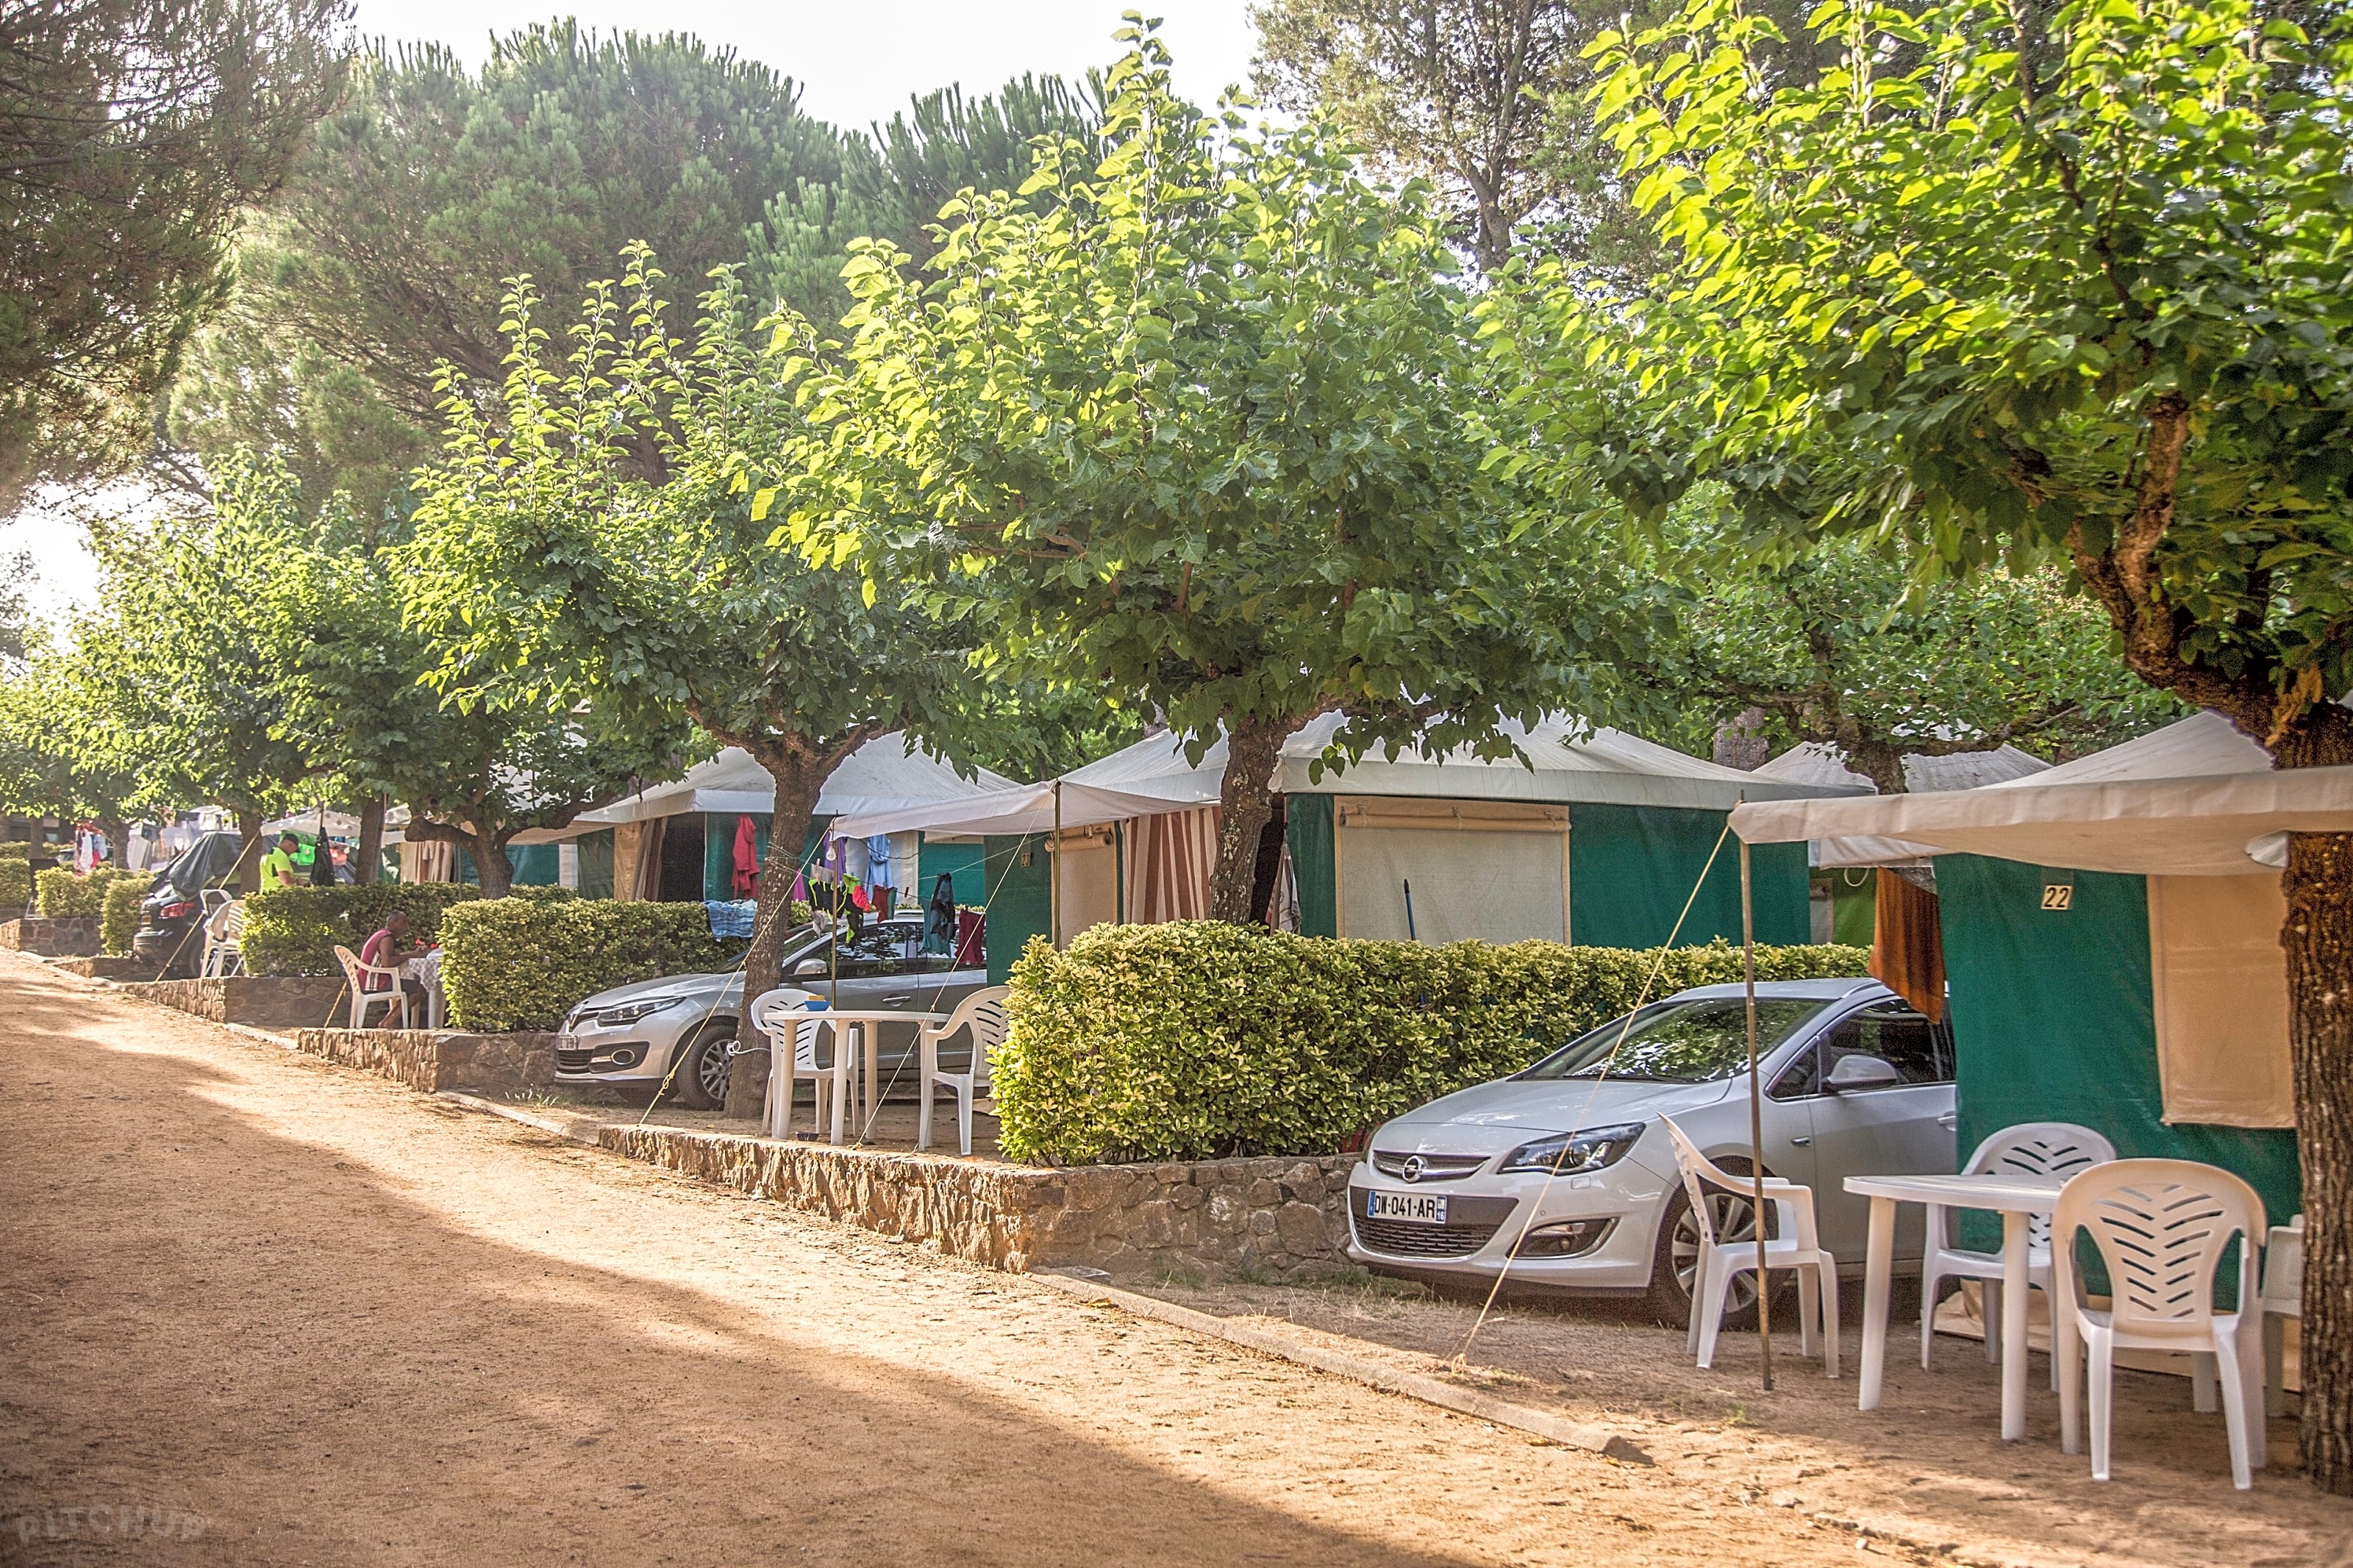 Campings con tiendas montadas, yurtas y tipis a de 20,00 € por noche | Pitchup.com